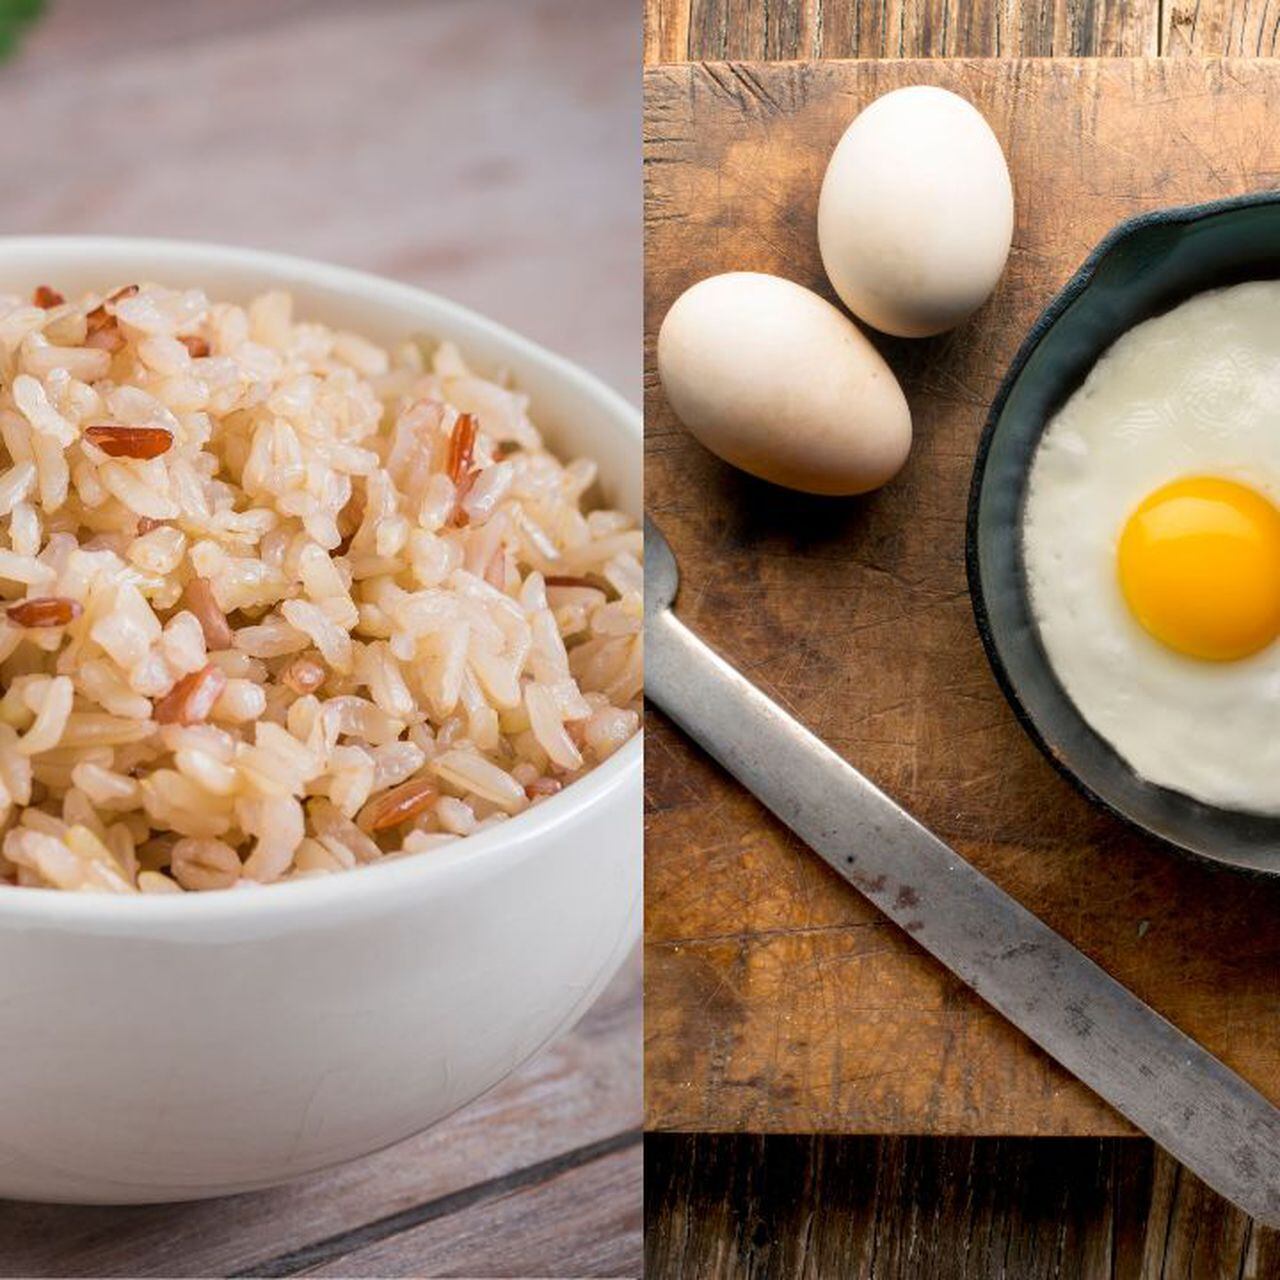 Carbohidratos en el arroz integral: ¿Son buenos para ti?